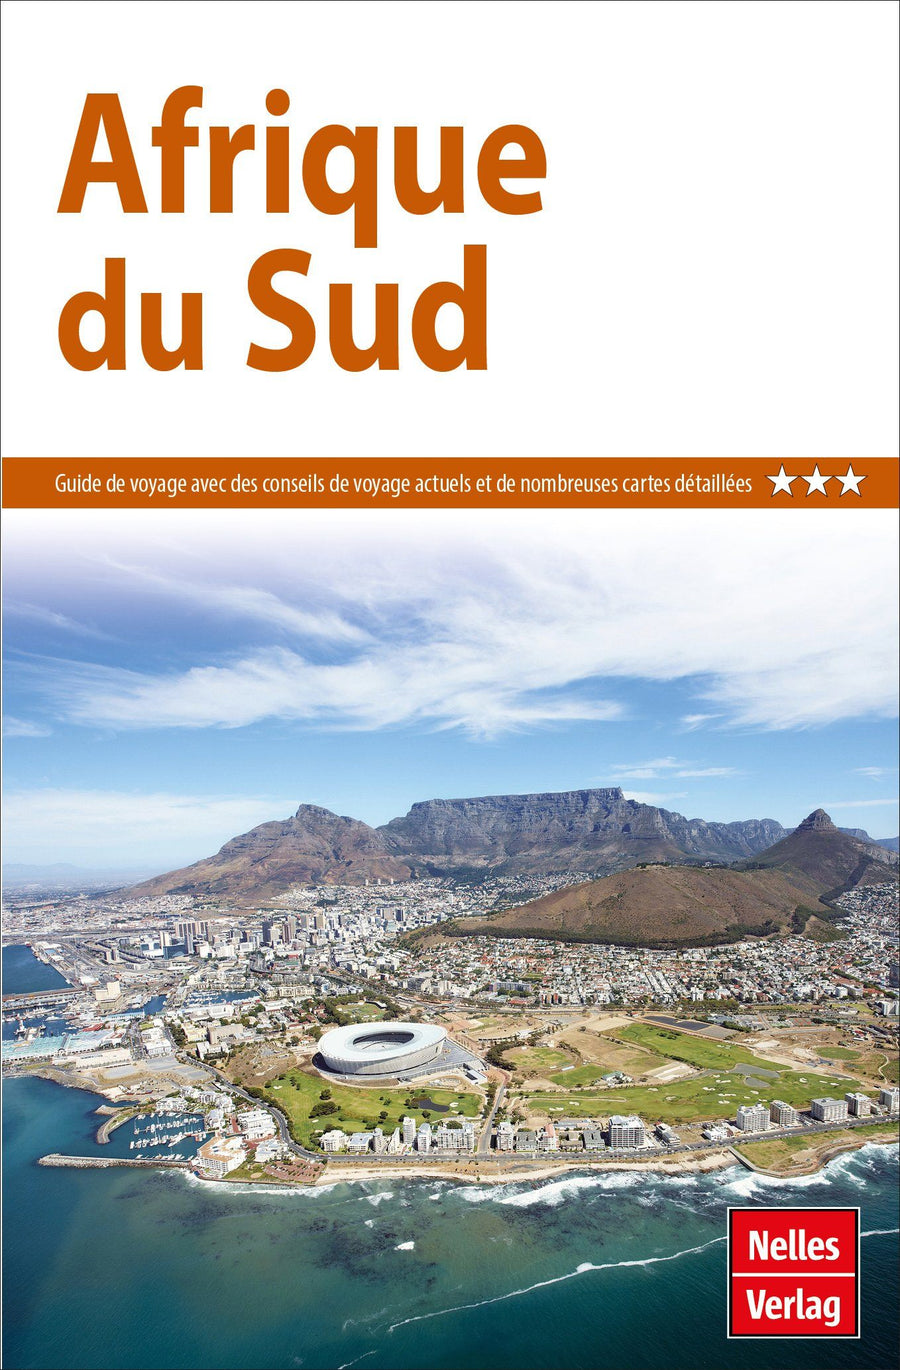 Guide de voyage - Afrique du Sud | Nelles Guide guide de voyage Nelles Guide 